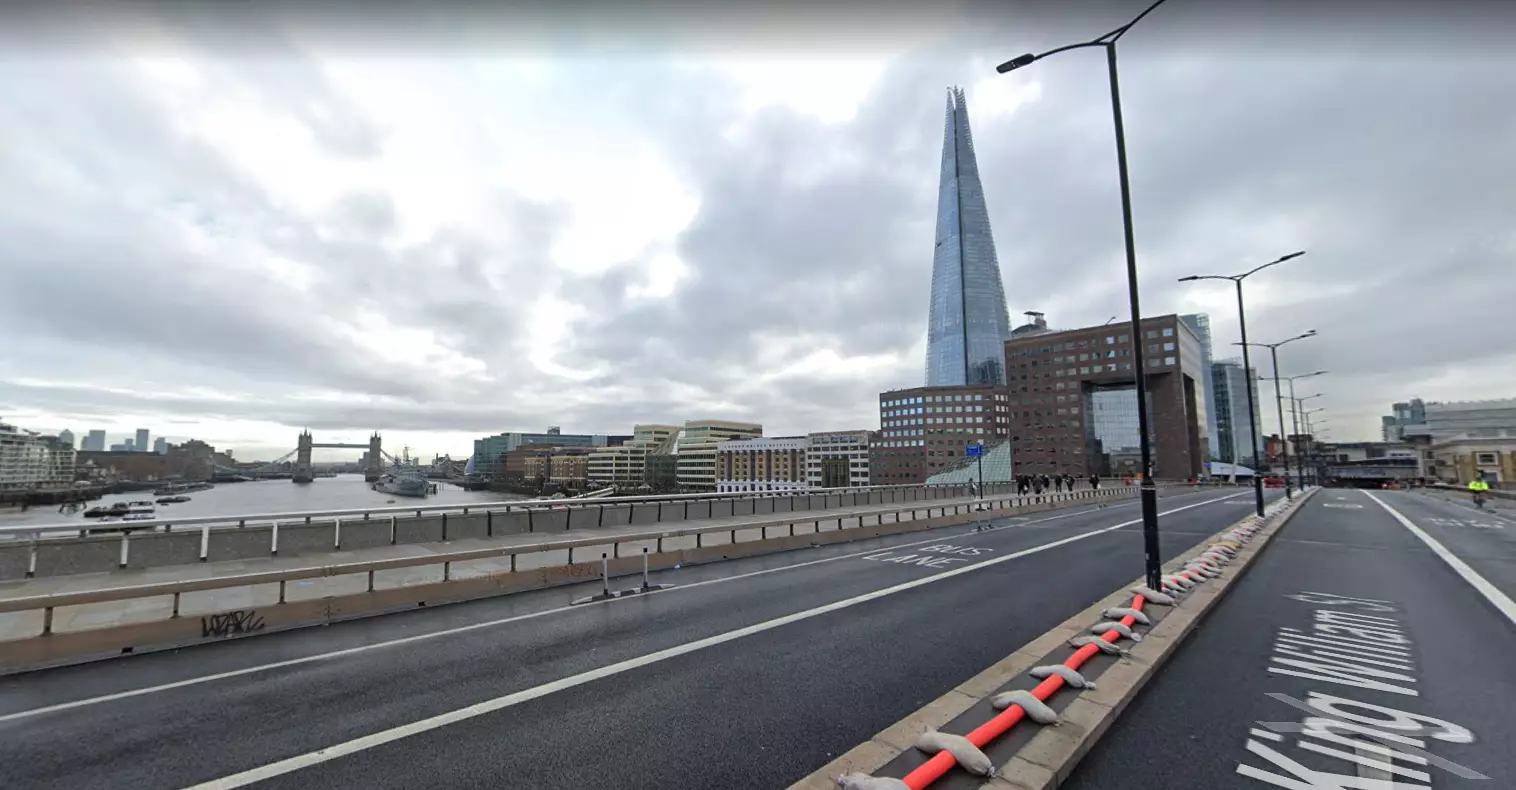 London Bridge in 2019. (